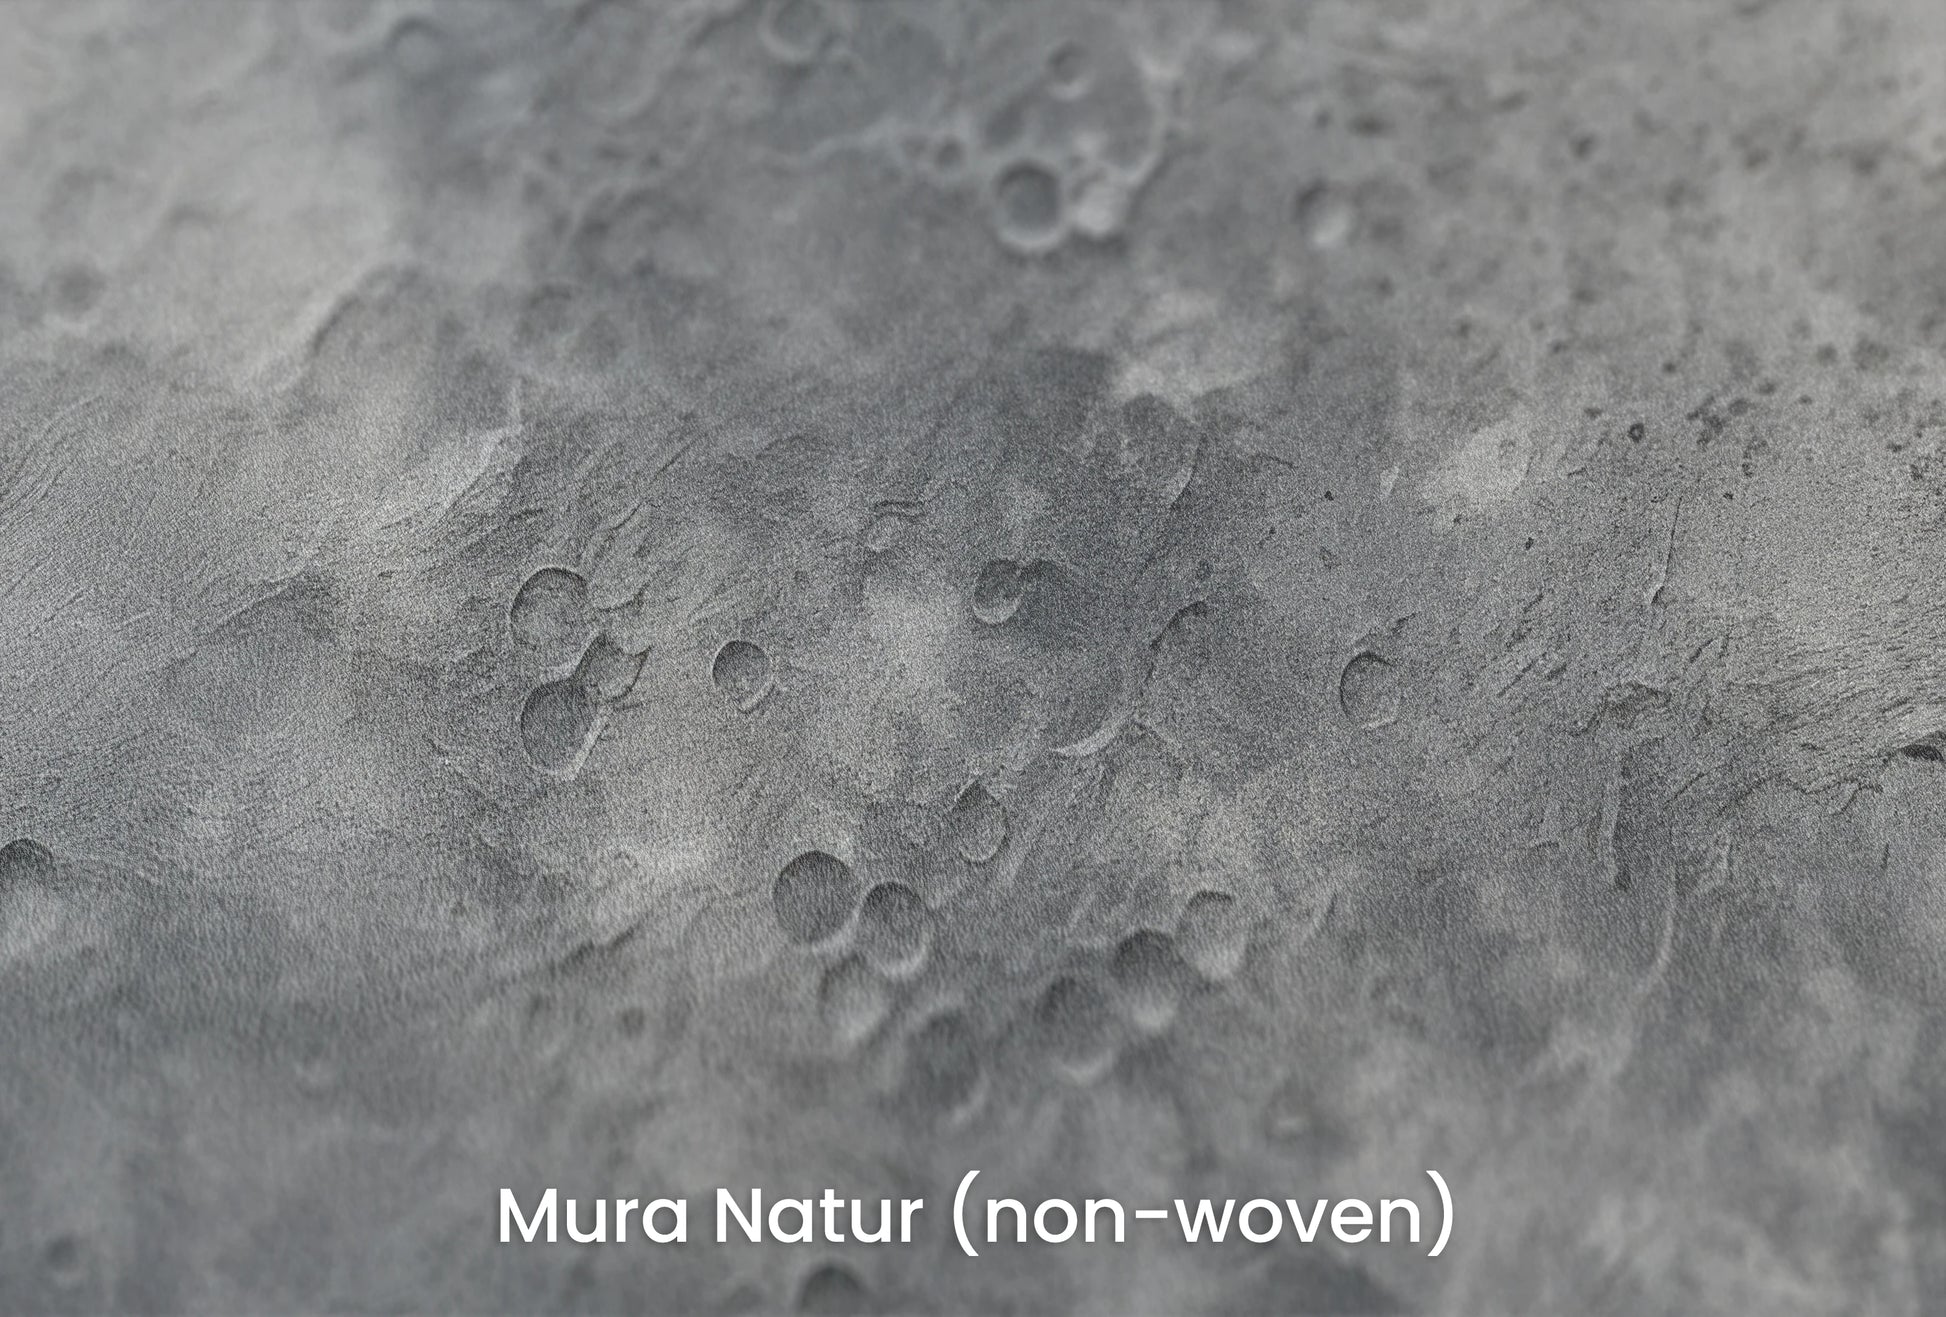 Zbliżenie na artystyczną fototapetę o nazwie Moon's Geography na podłożu Mura Natur (non-woven) - naturalne i ekologiczne podłoże.